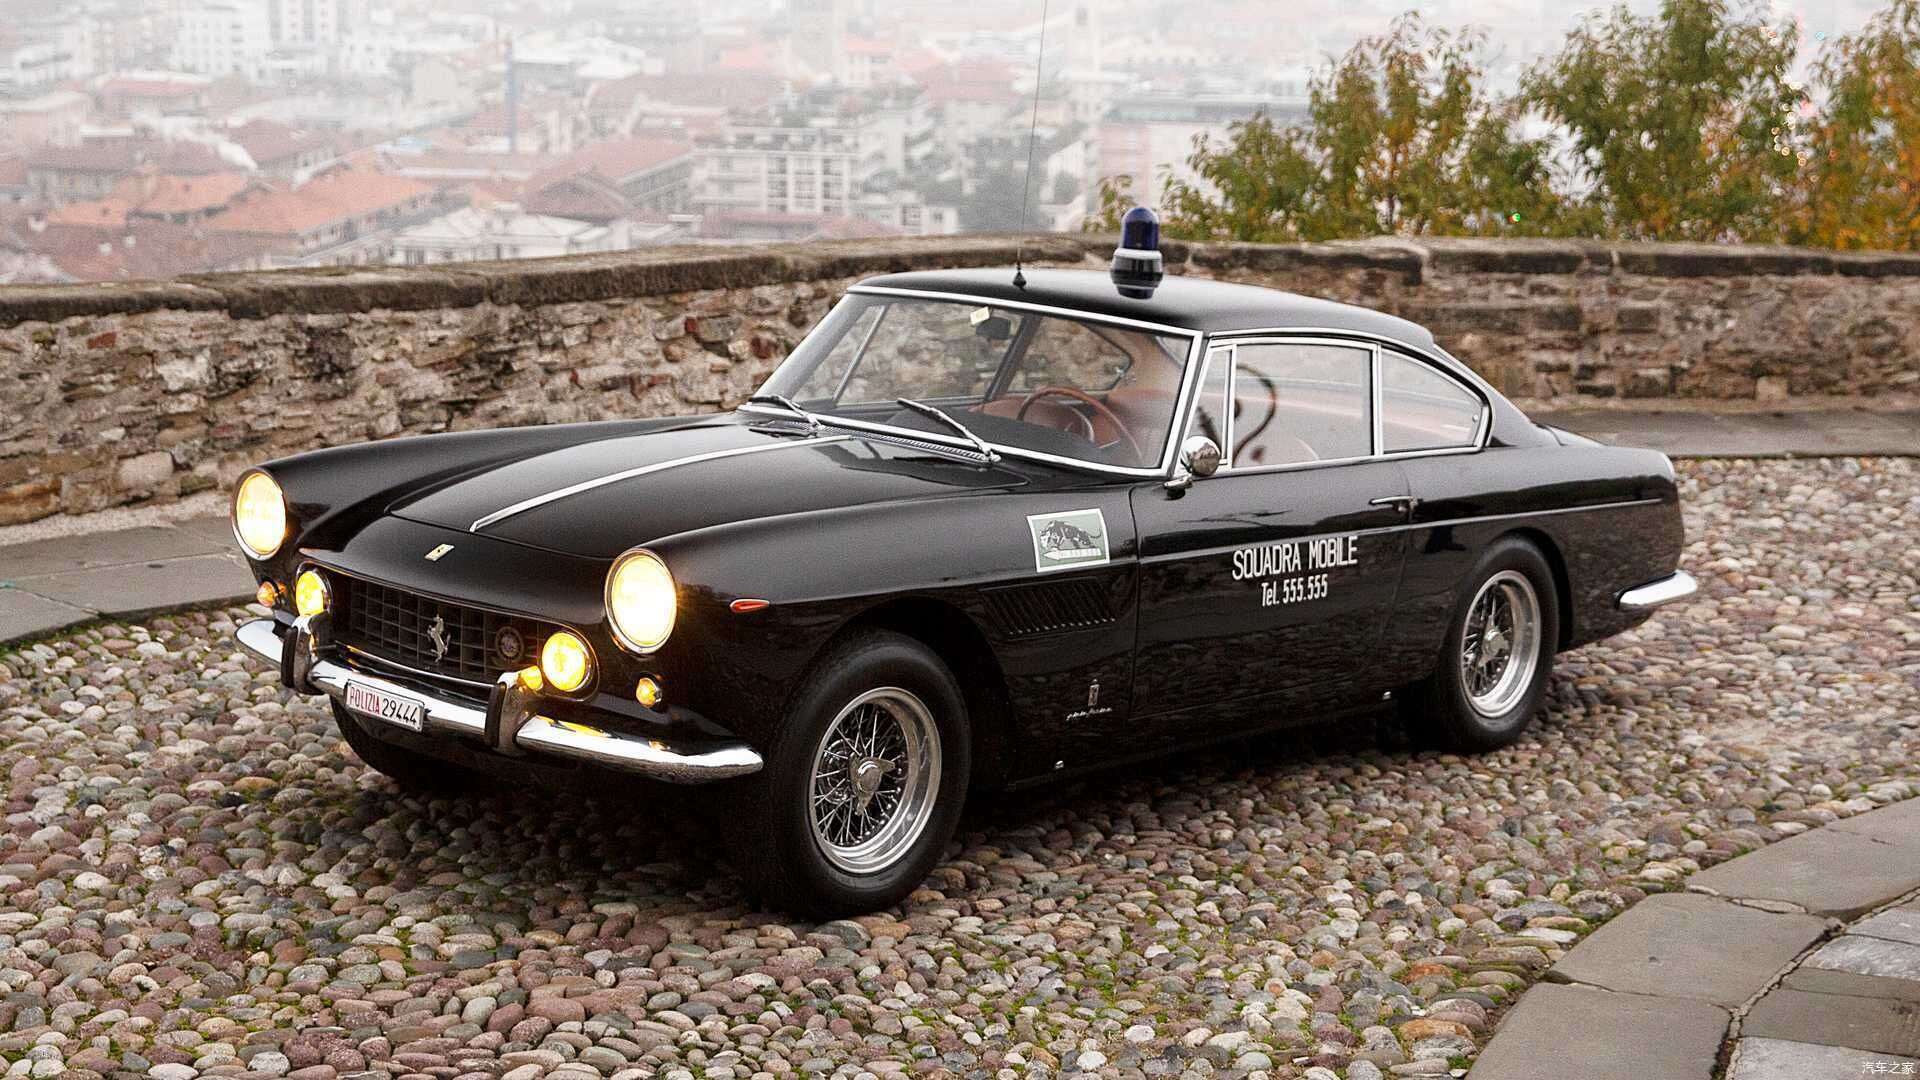 经典 60年代的法拉利250gte警车全球仅此一辆 楠木轩